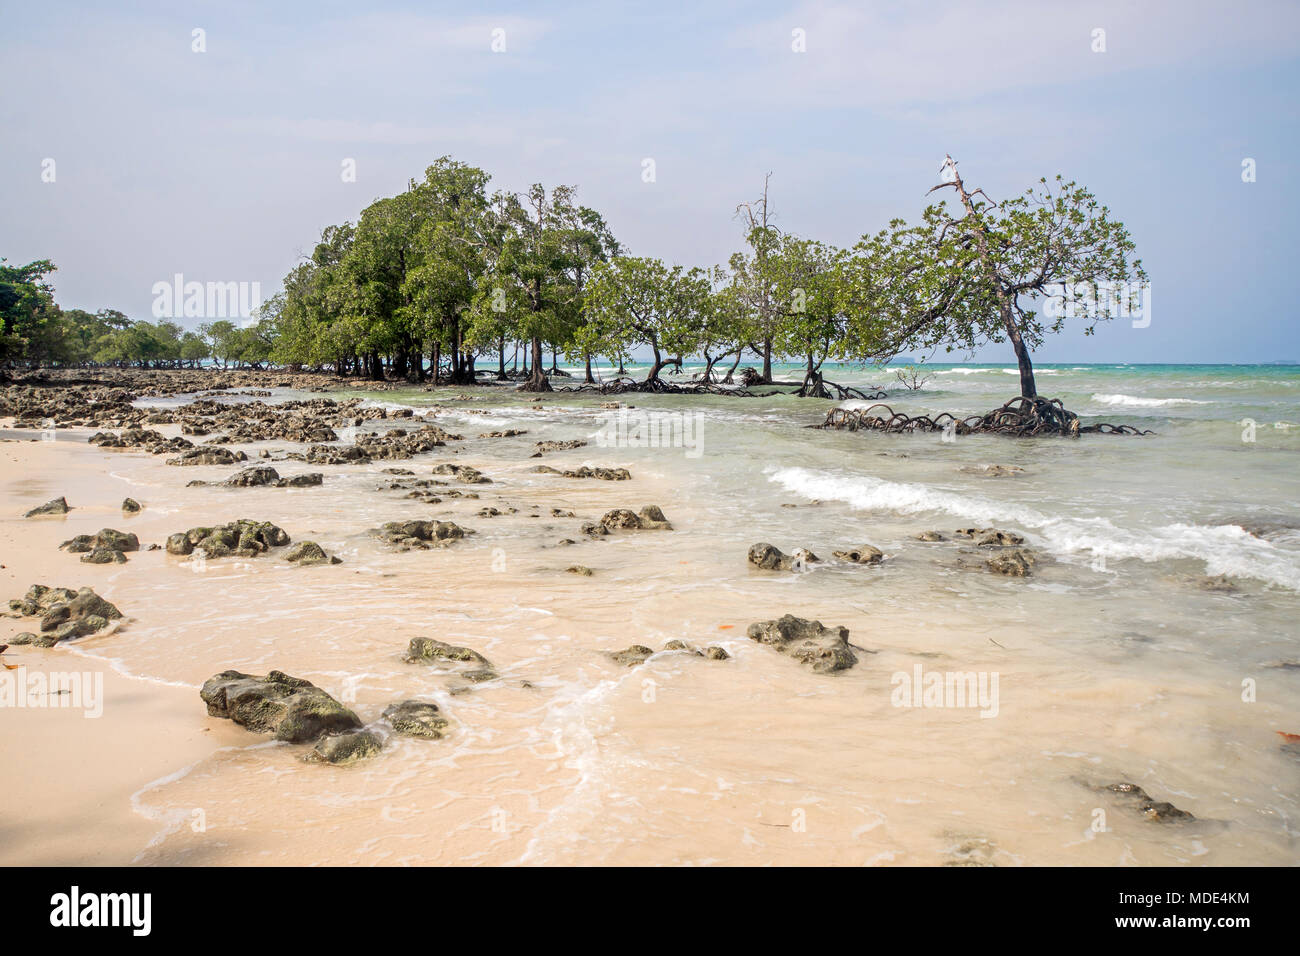 Wunderschöne exotische Bäume gegen das Meer Landschaft mit blauen Wolken und türkisblauem Wasser. Unbewohnte Insel im Indischen Ozean.. Steine auf weißen Sand b Stockfoto